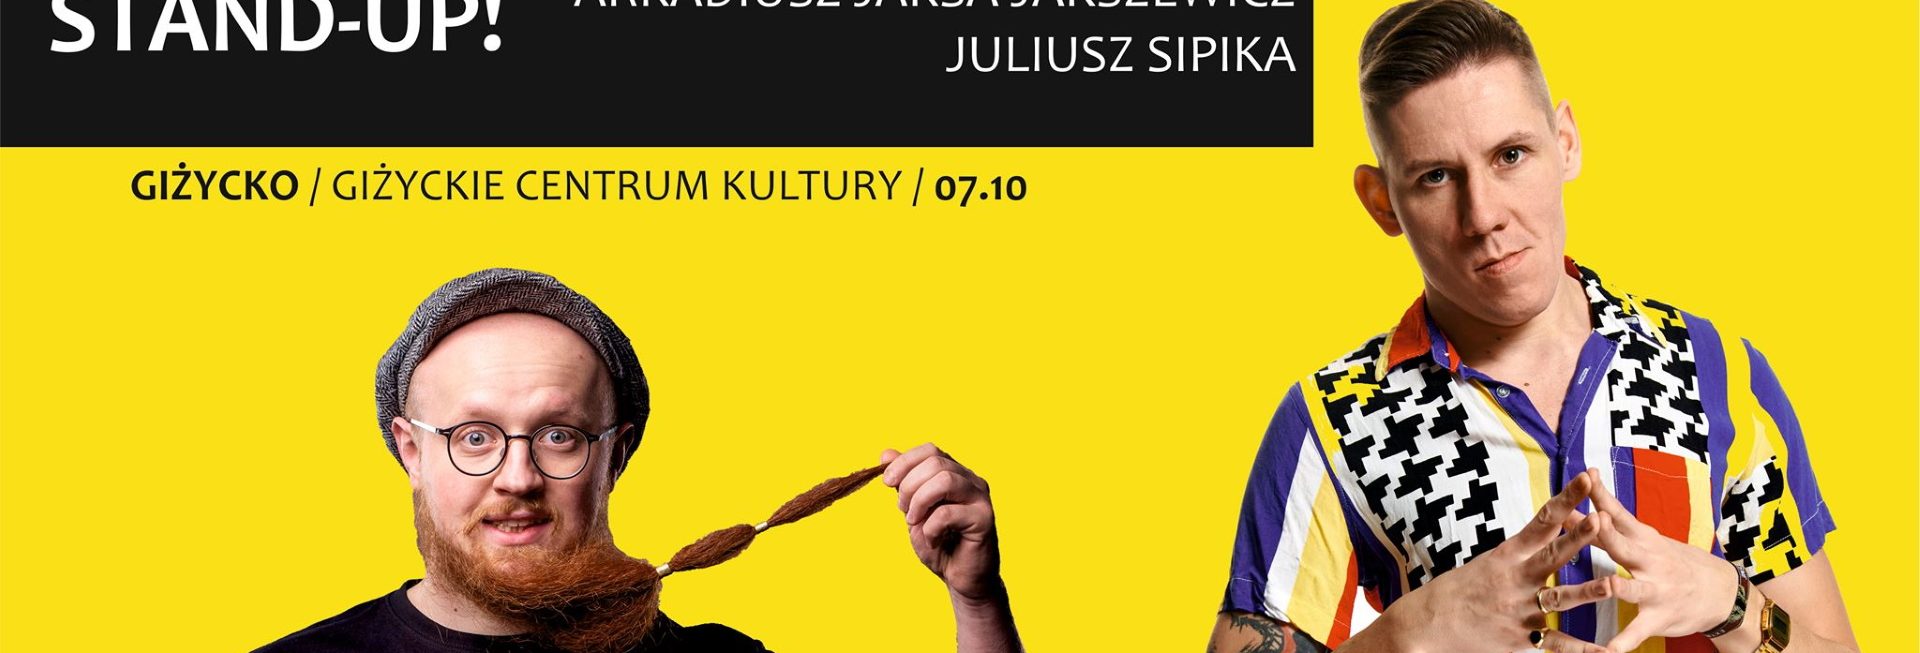 Plakat graficzny zapraszający do Giżycka na występ Stand-up Juliusz Sipika & Arkadiusz Jaksa Jakszewicz - Giżycko 2021.